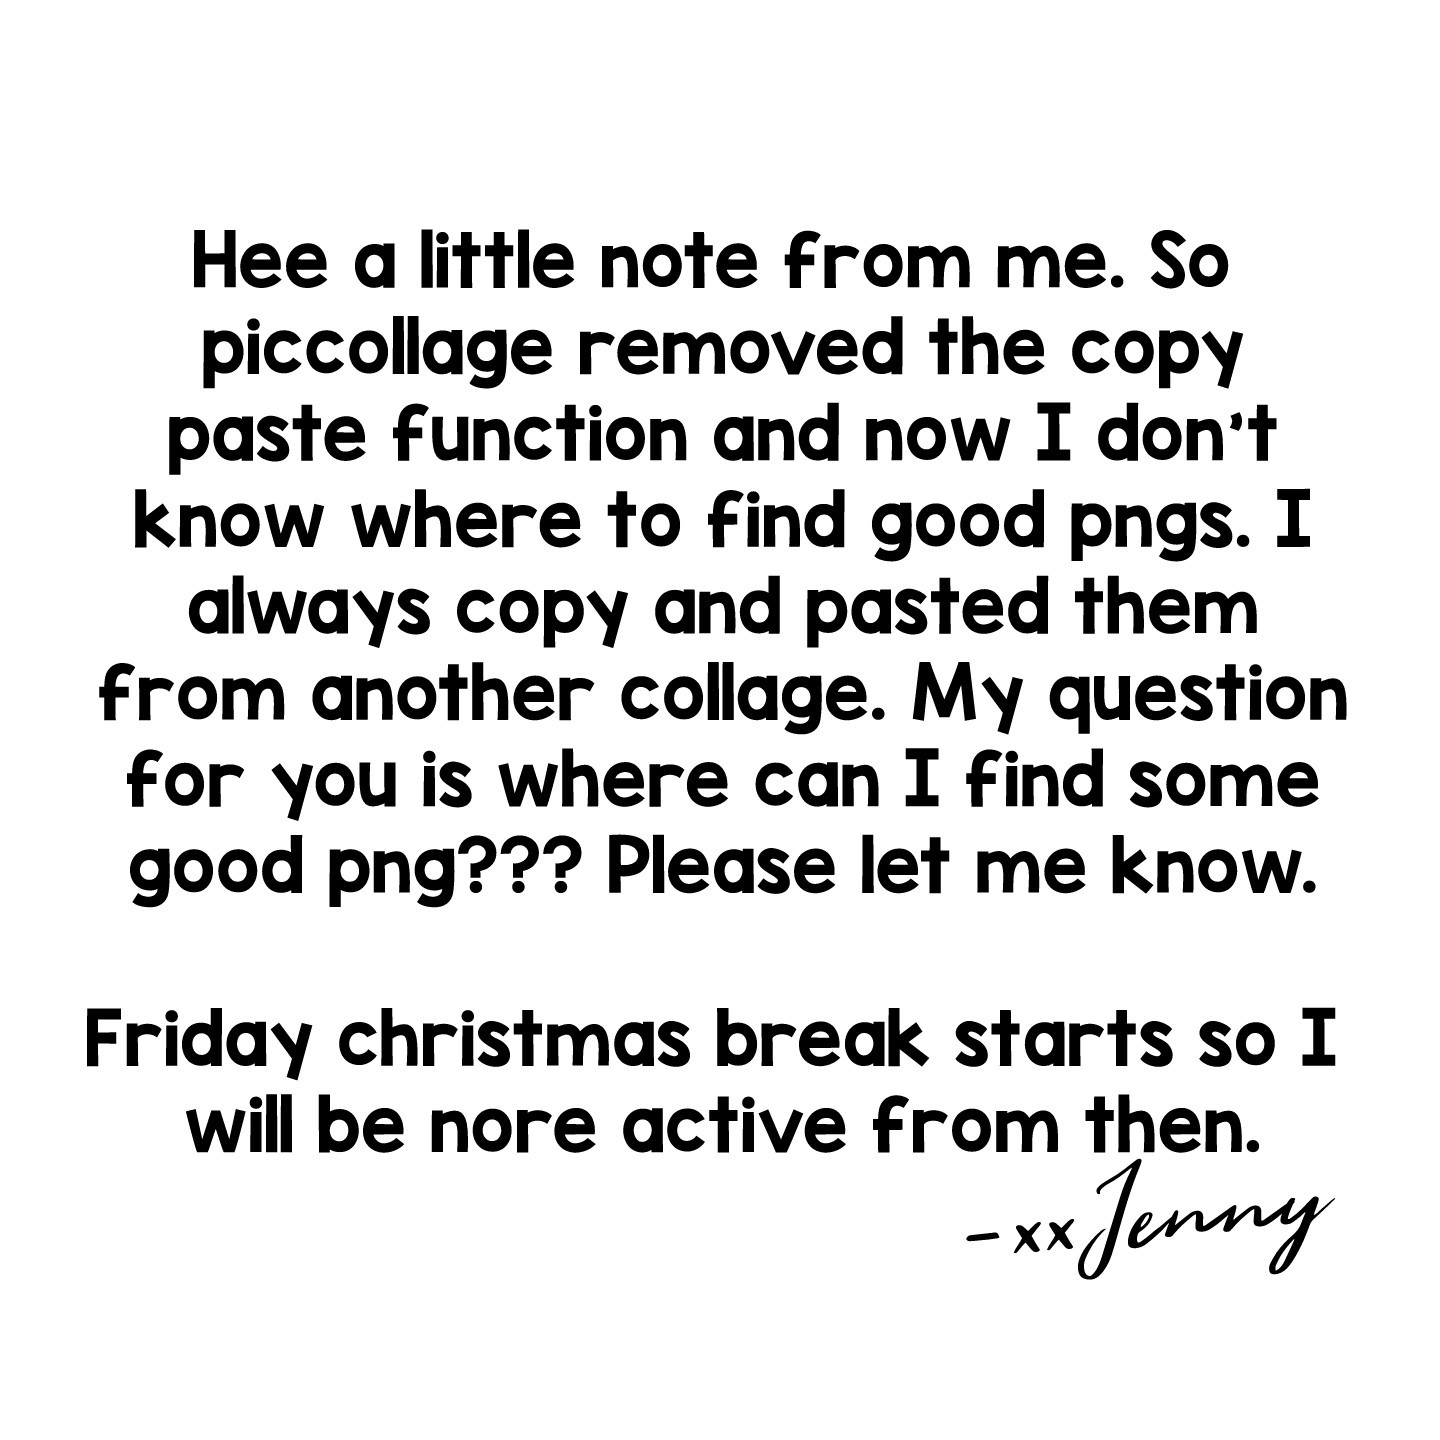 Please let me know!! 💗